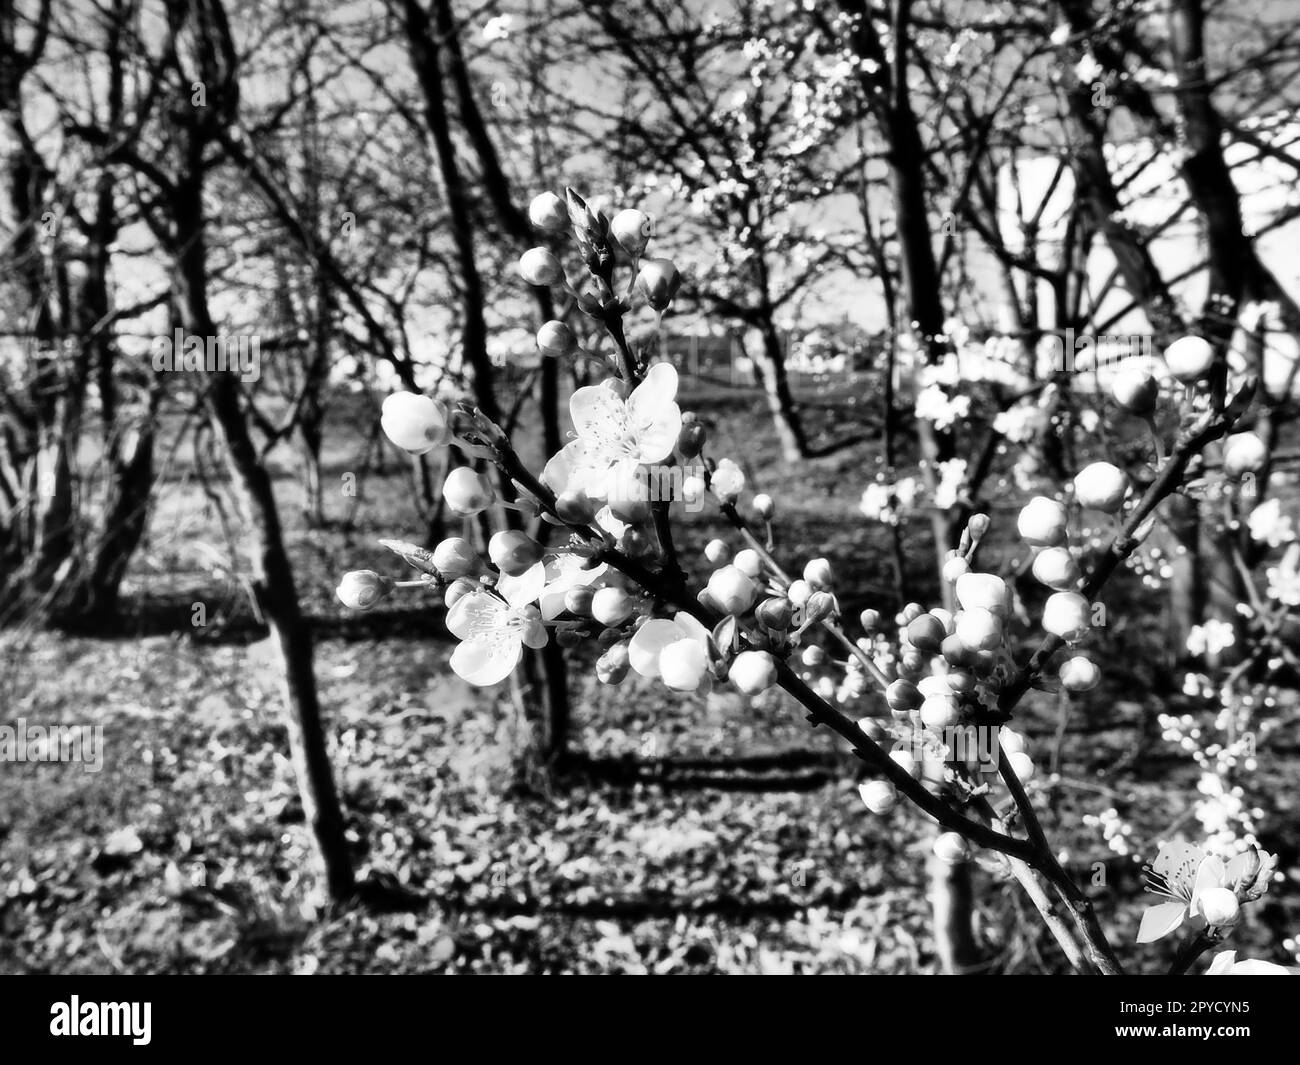 Ein Baum blüht mit weißen Blumen. Kirsche, Apfel, Pflaume oder Süßkirsche im blühenden Zustand. Zarte weiße Blütenblätter. Postkarte. Herzlichen Glückwunsch zum Frühlingstag, glücklicher Muttertag. Schwarz auf Weiß Stockfoto